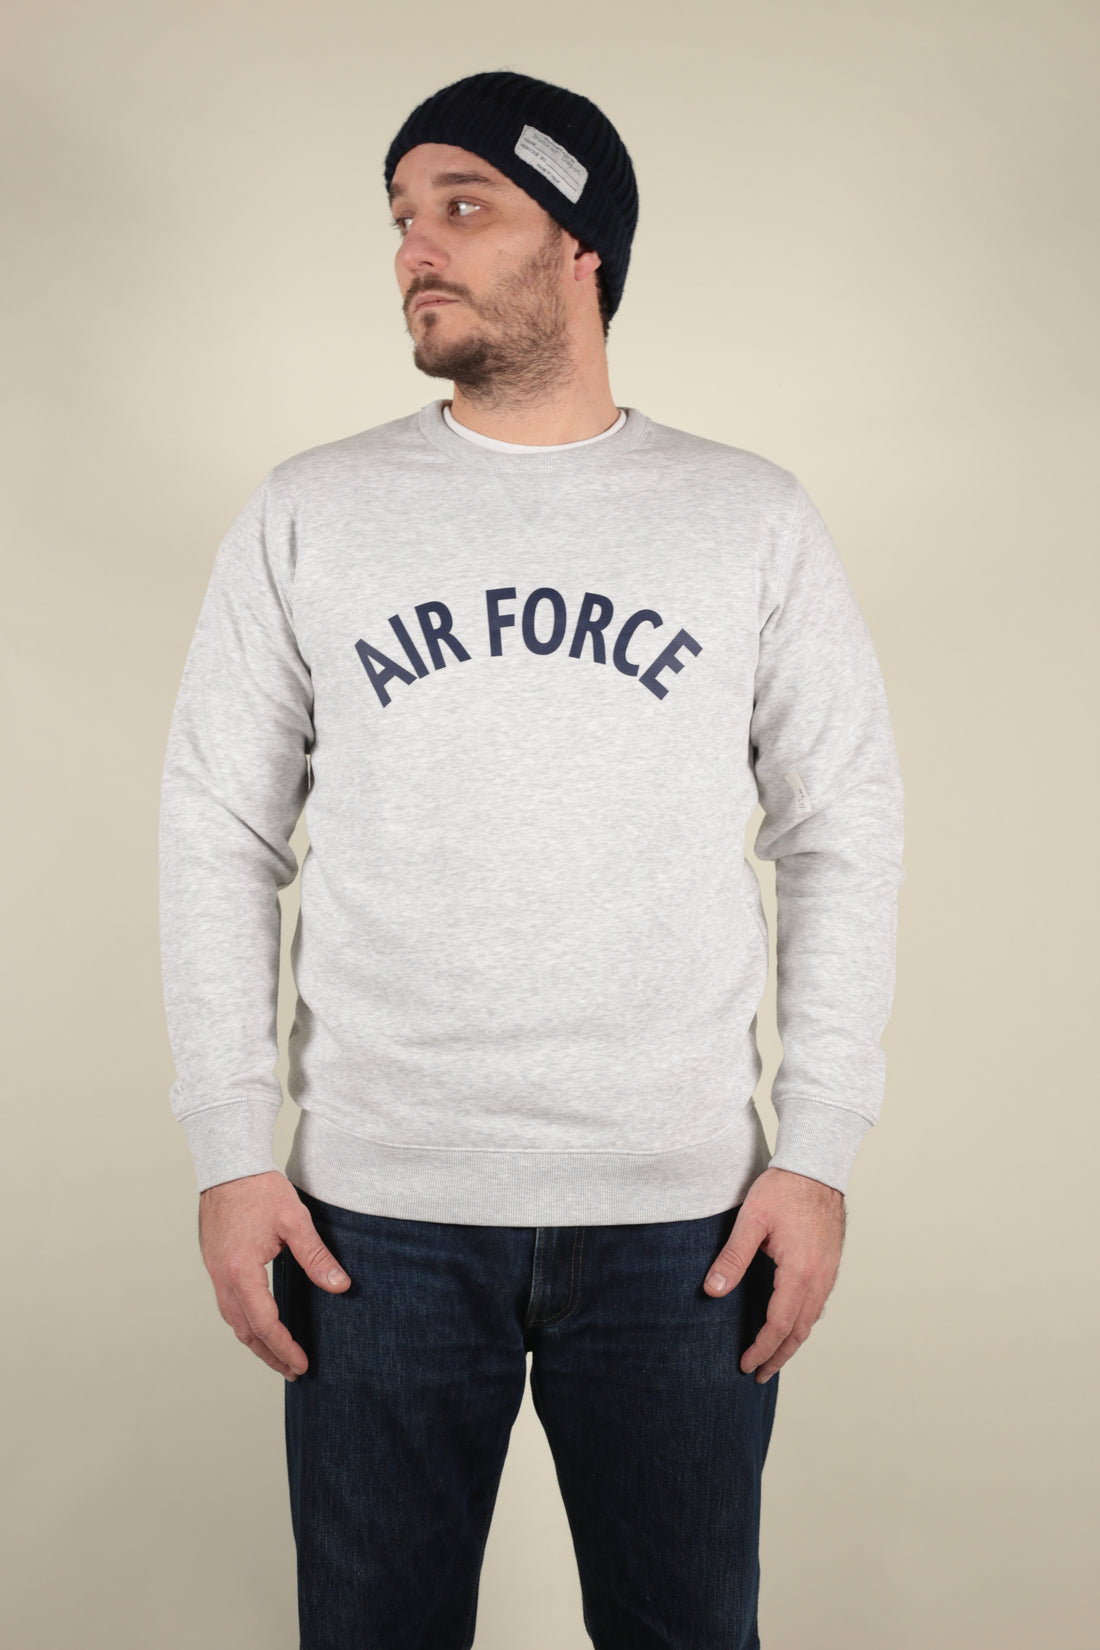 Us Air Force sweatshirt